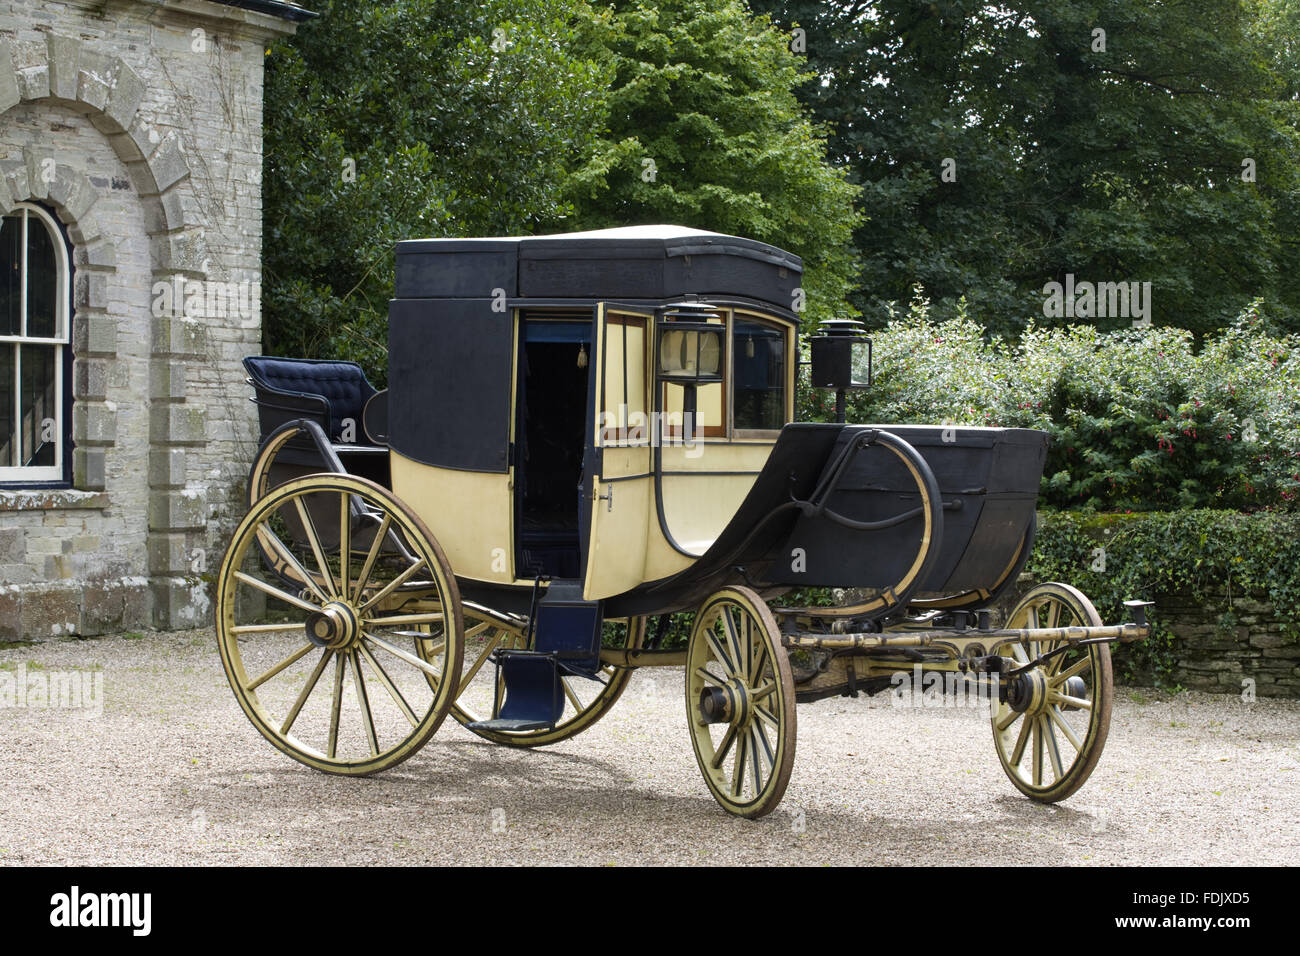 Chariot de déplacement, début des années 1800, partie du National Trust's Carriage Museum collection à Arlington Court, Devon. Banque D'Images